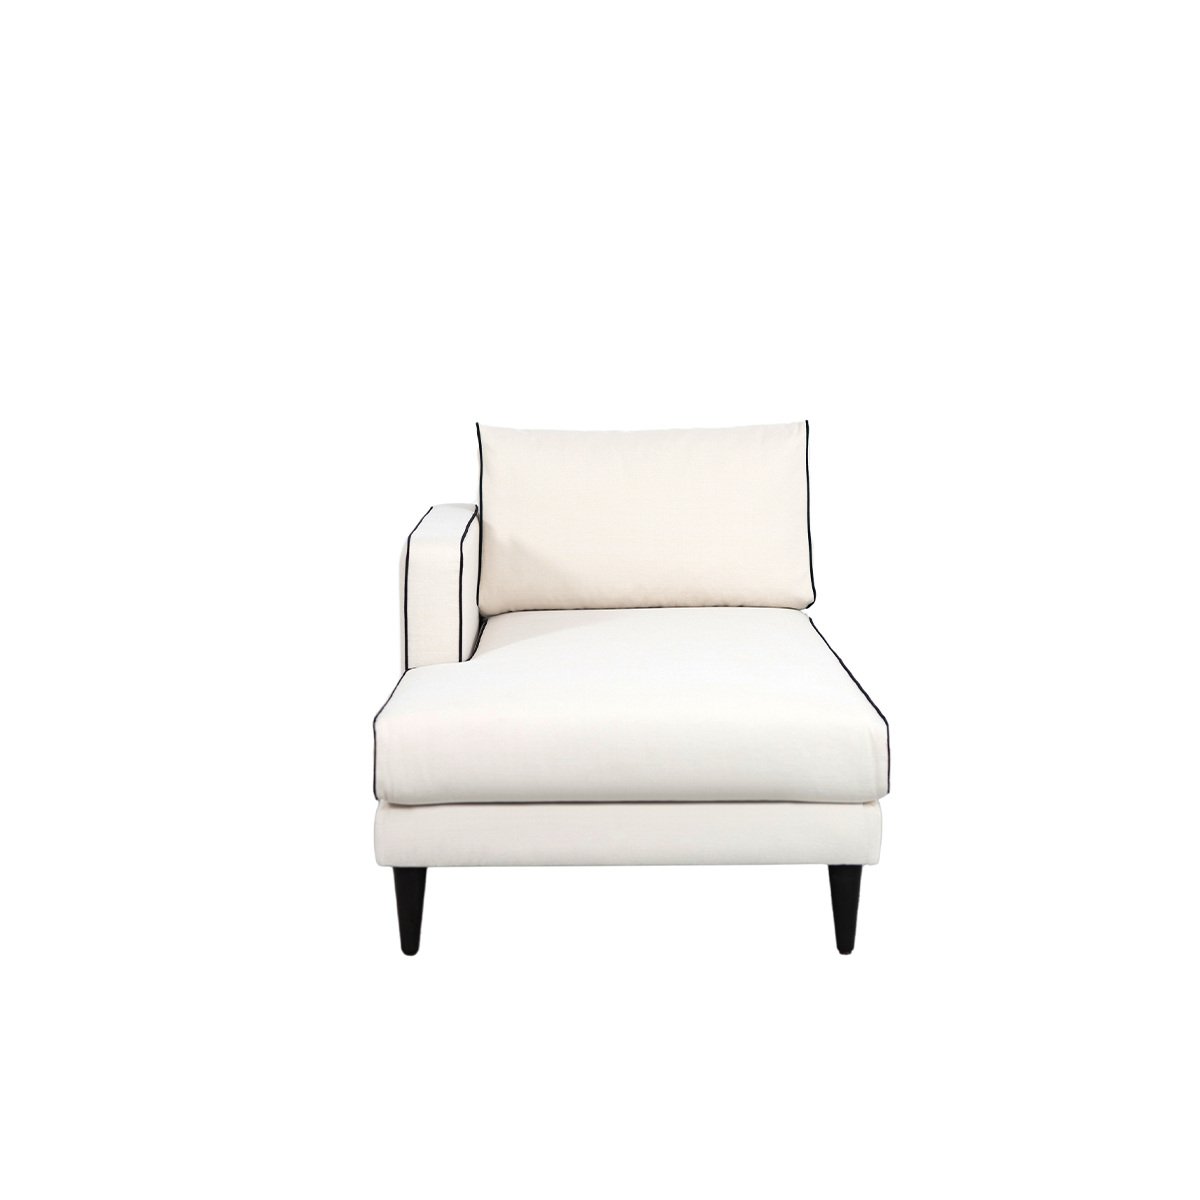 Noa sofa - Left armrest, L180 x P90 x H80 cm - Cotton - image 2